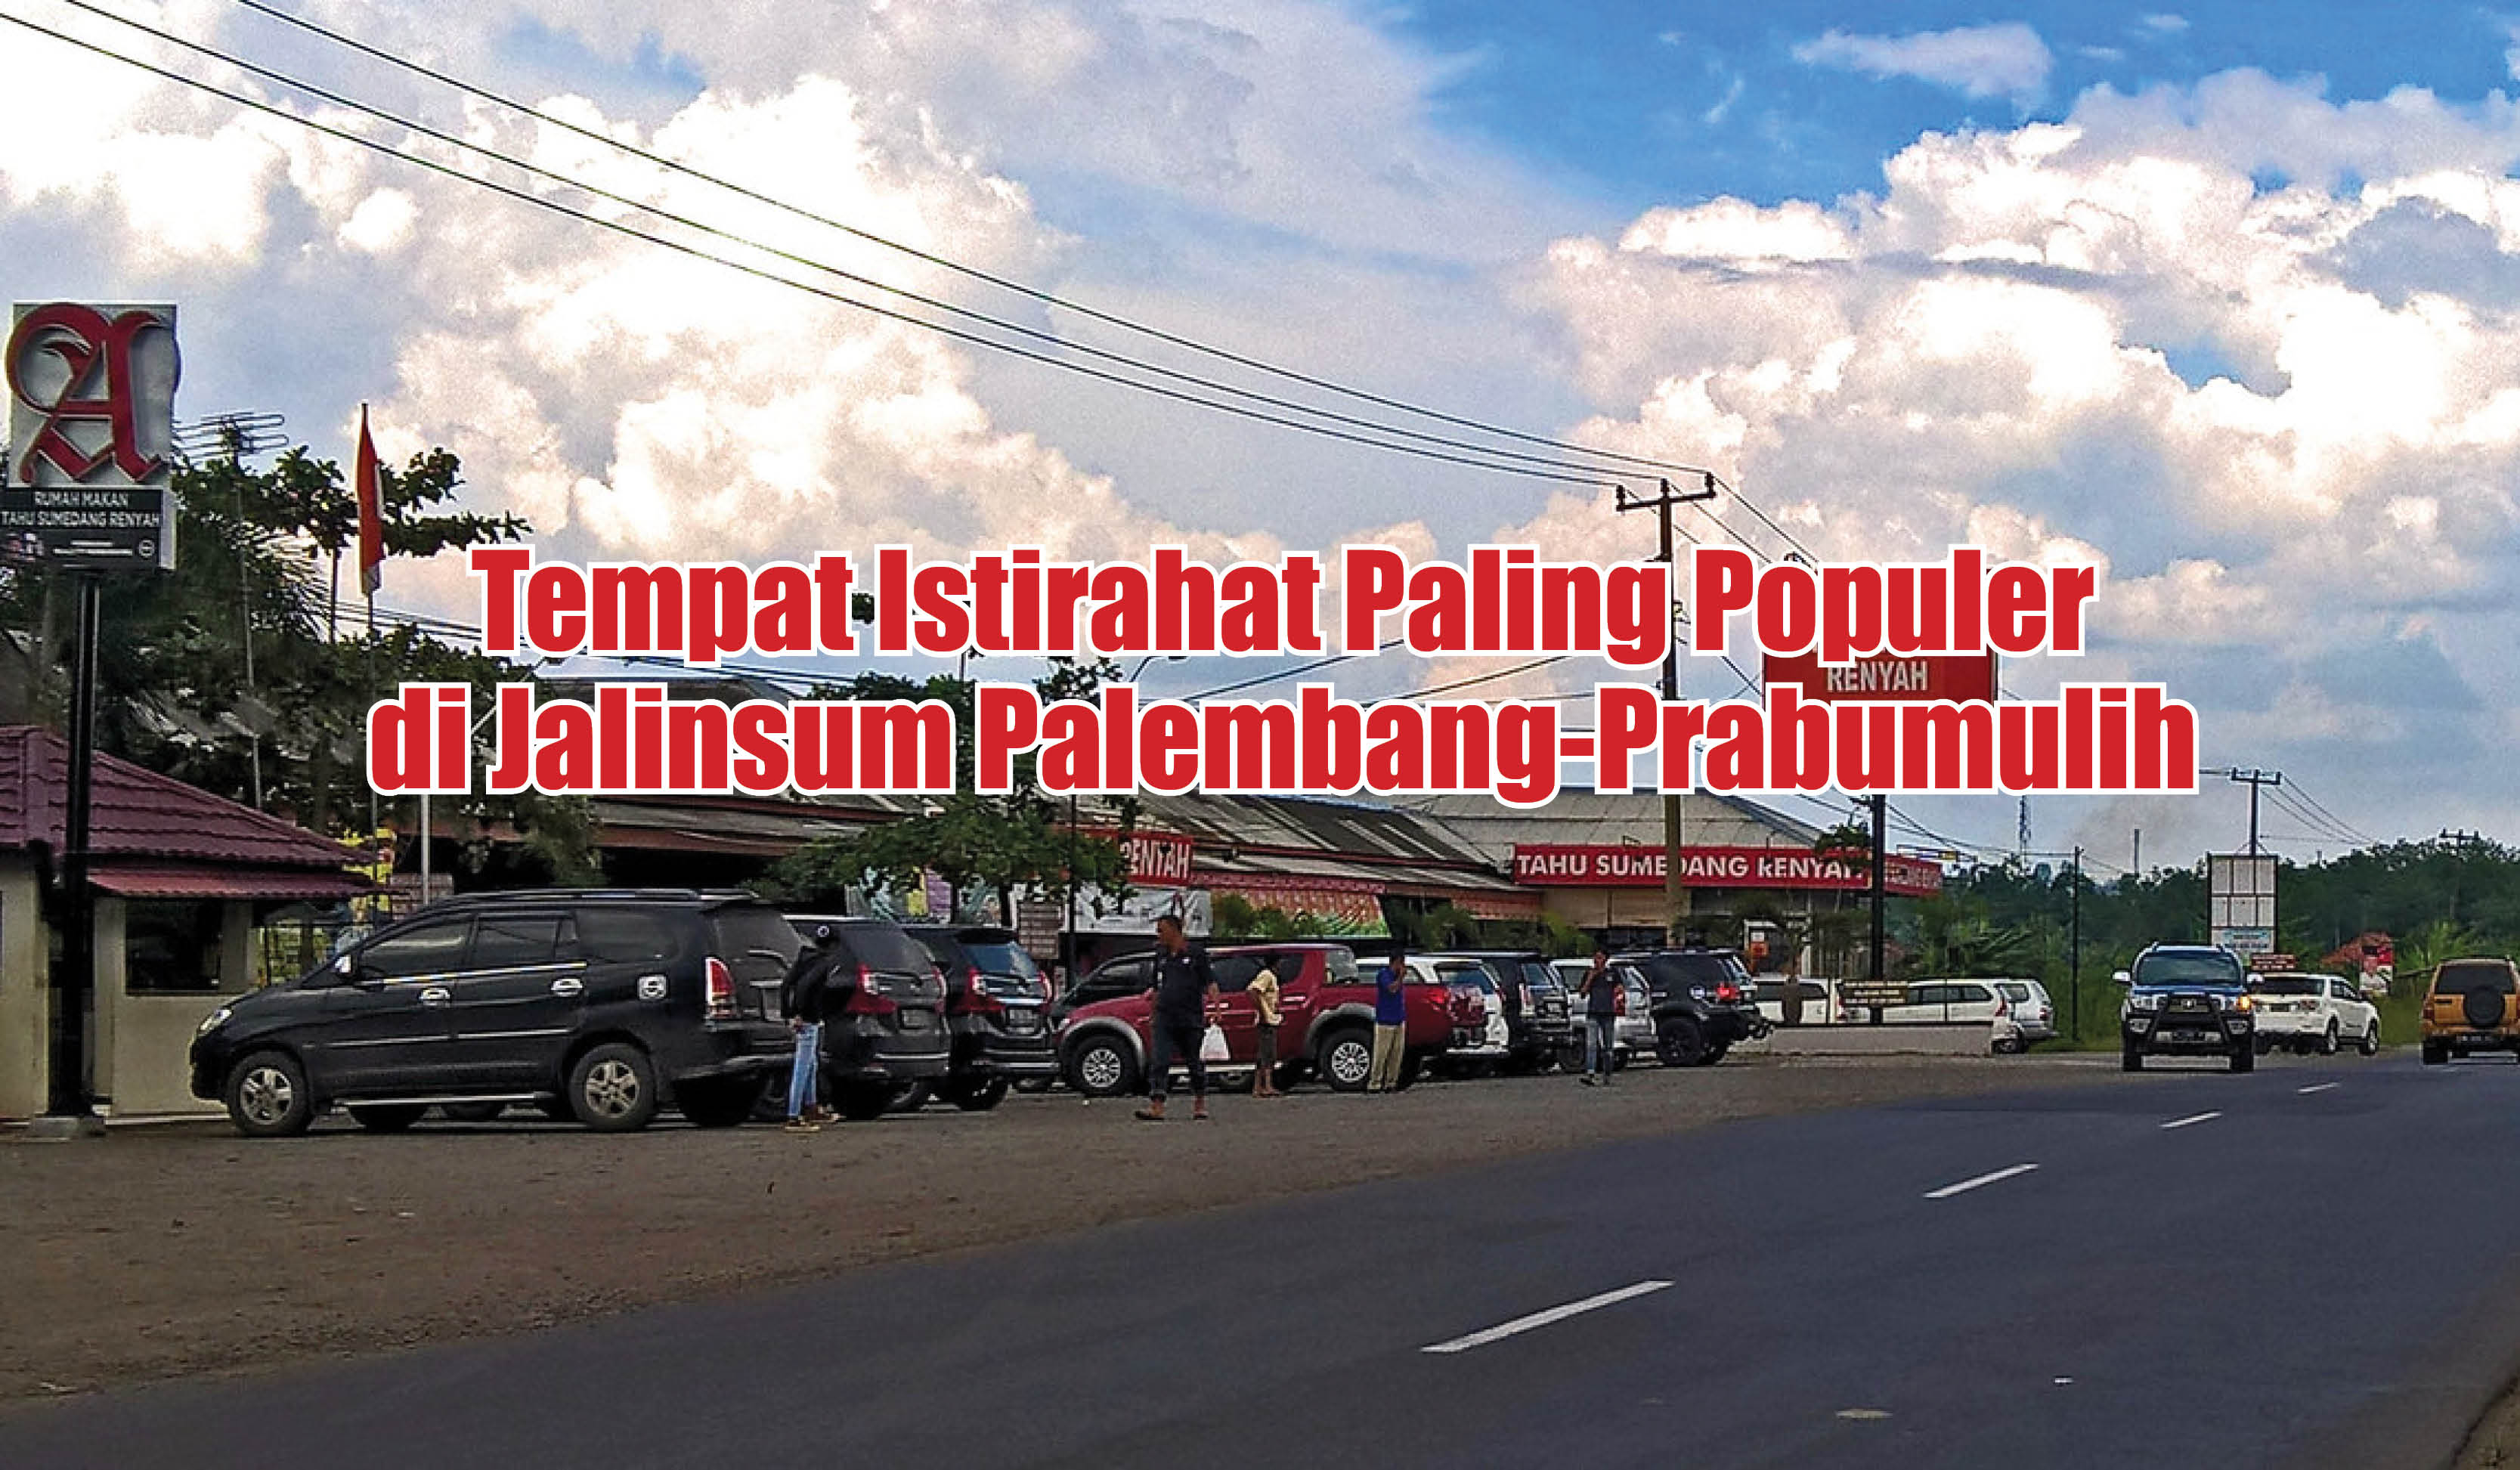 Inilah Tempat Istirahat Paling Populer di Jalinsum Palembang-Prabumulih, Ada yang Tahu?